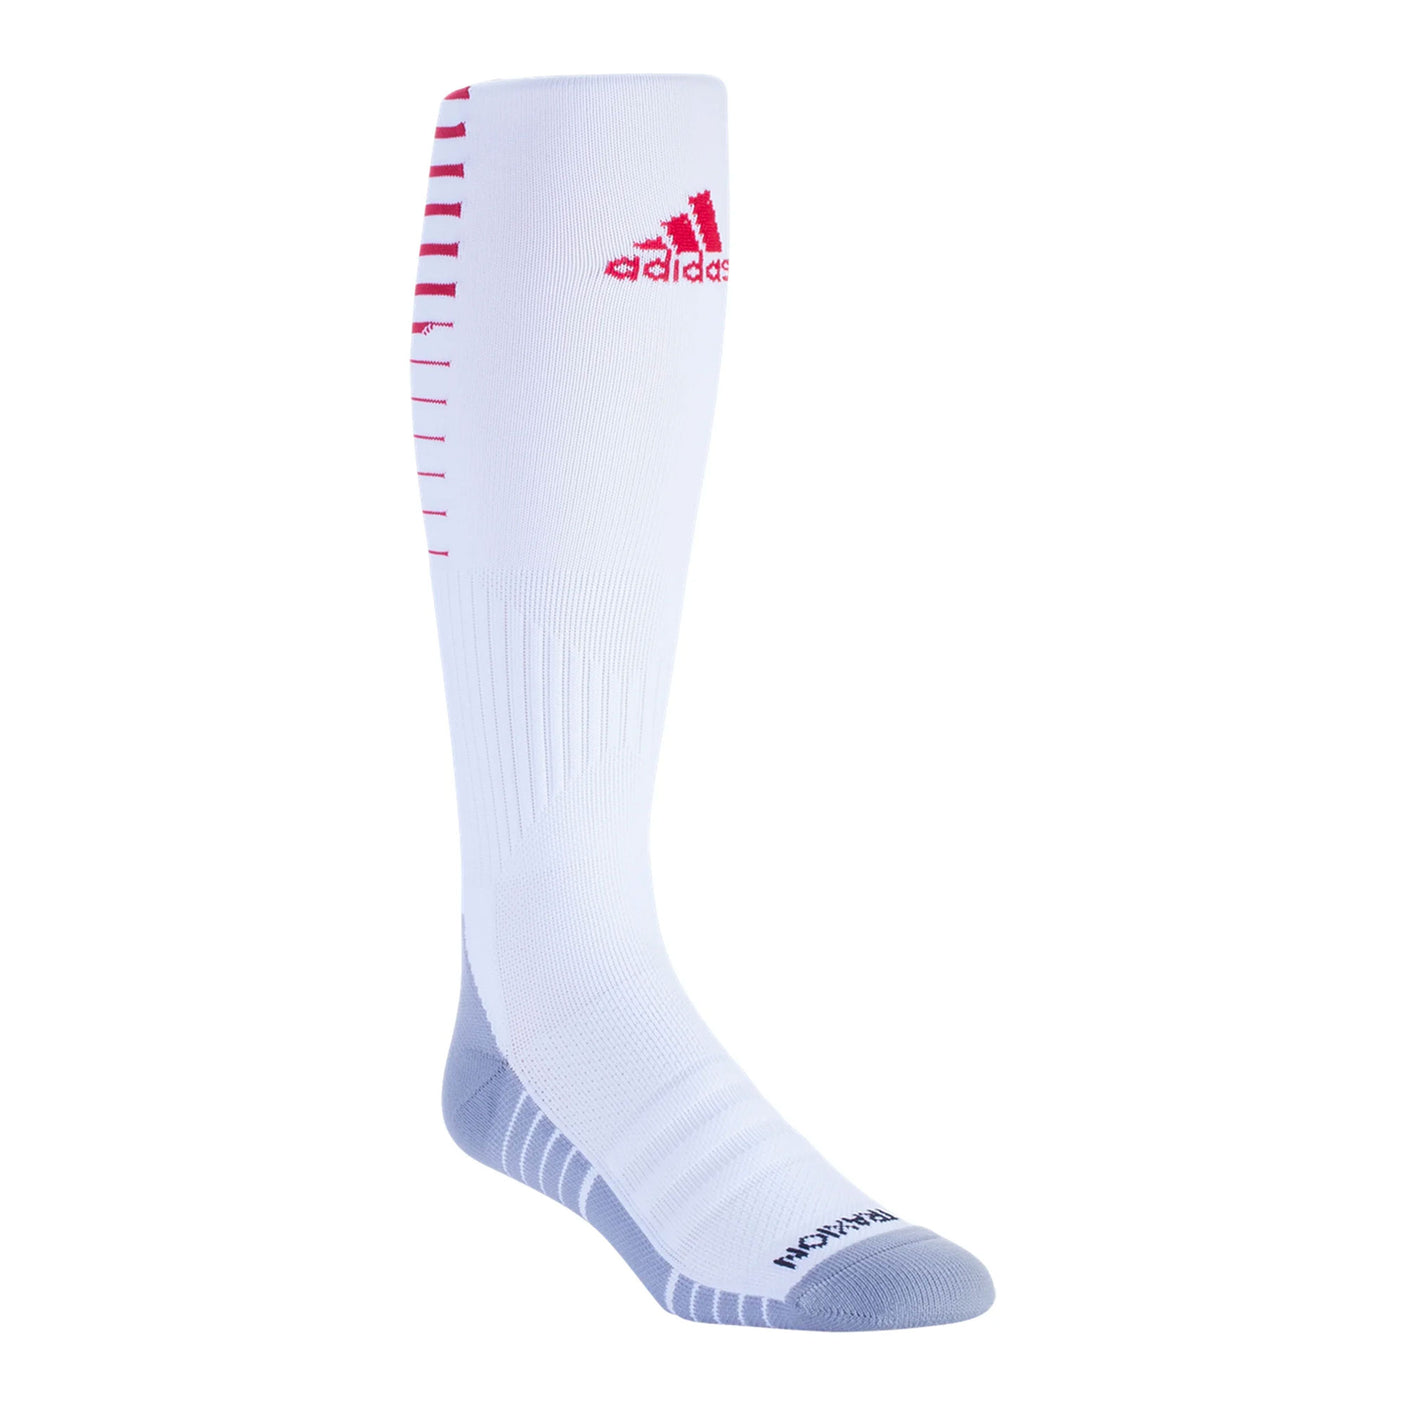 adidas Men's Team Speed II Soccer Socks White/Red - S